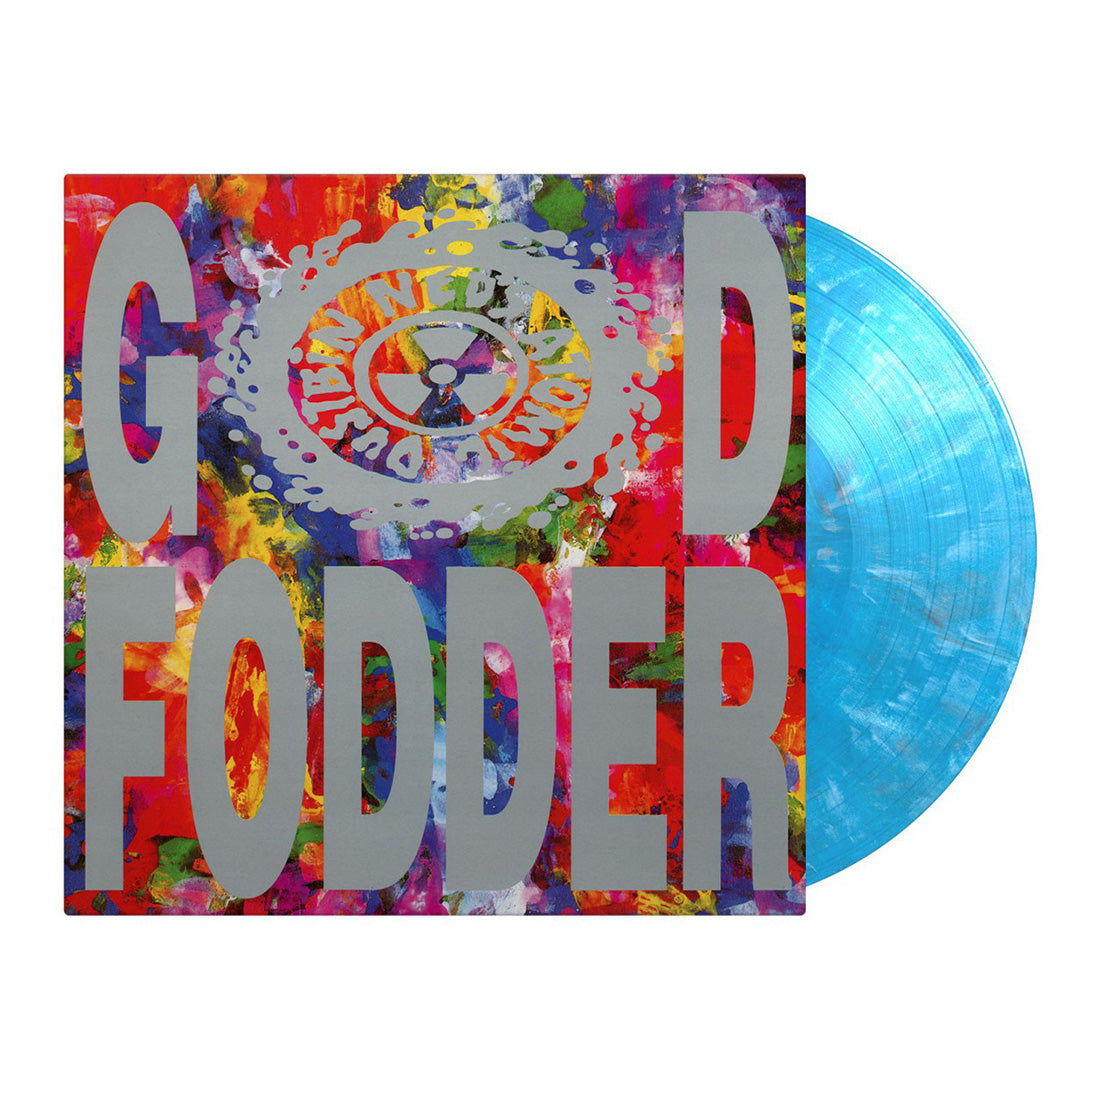 Ned's Atomic Dustbin - God Fodder: Limited Translucent Blue, White & Black Marbled Vinyl LP